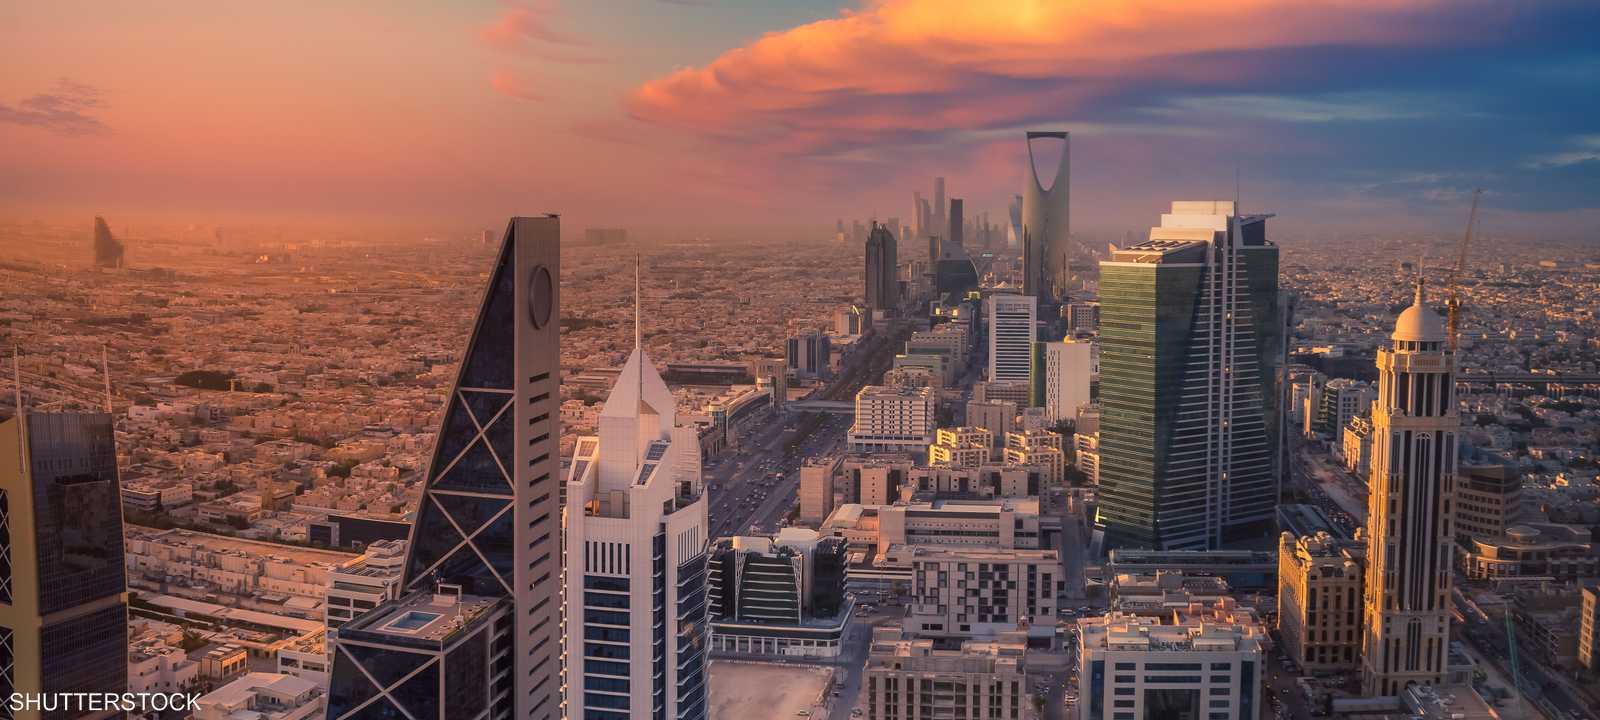 اقتصاد السعودية - الرياض